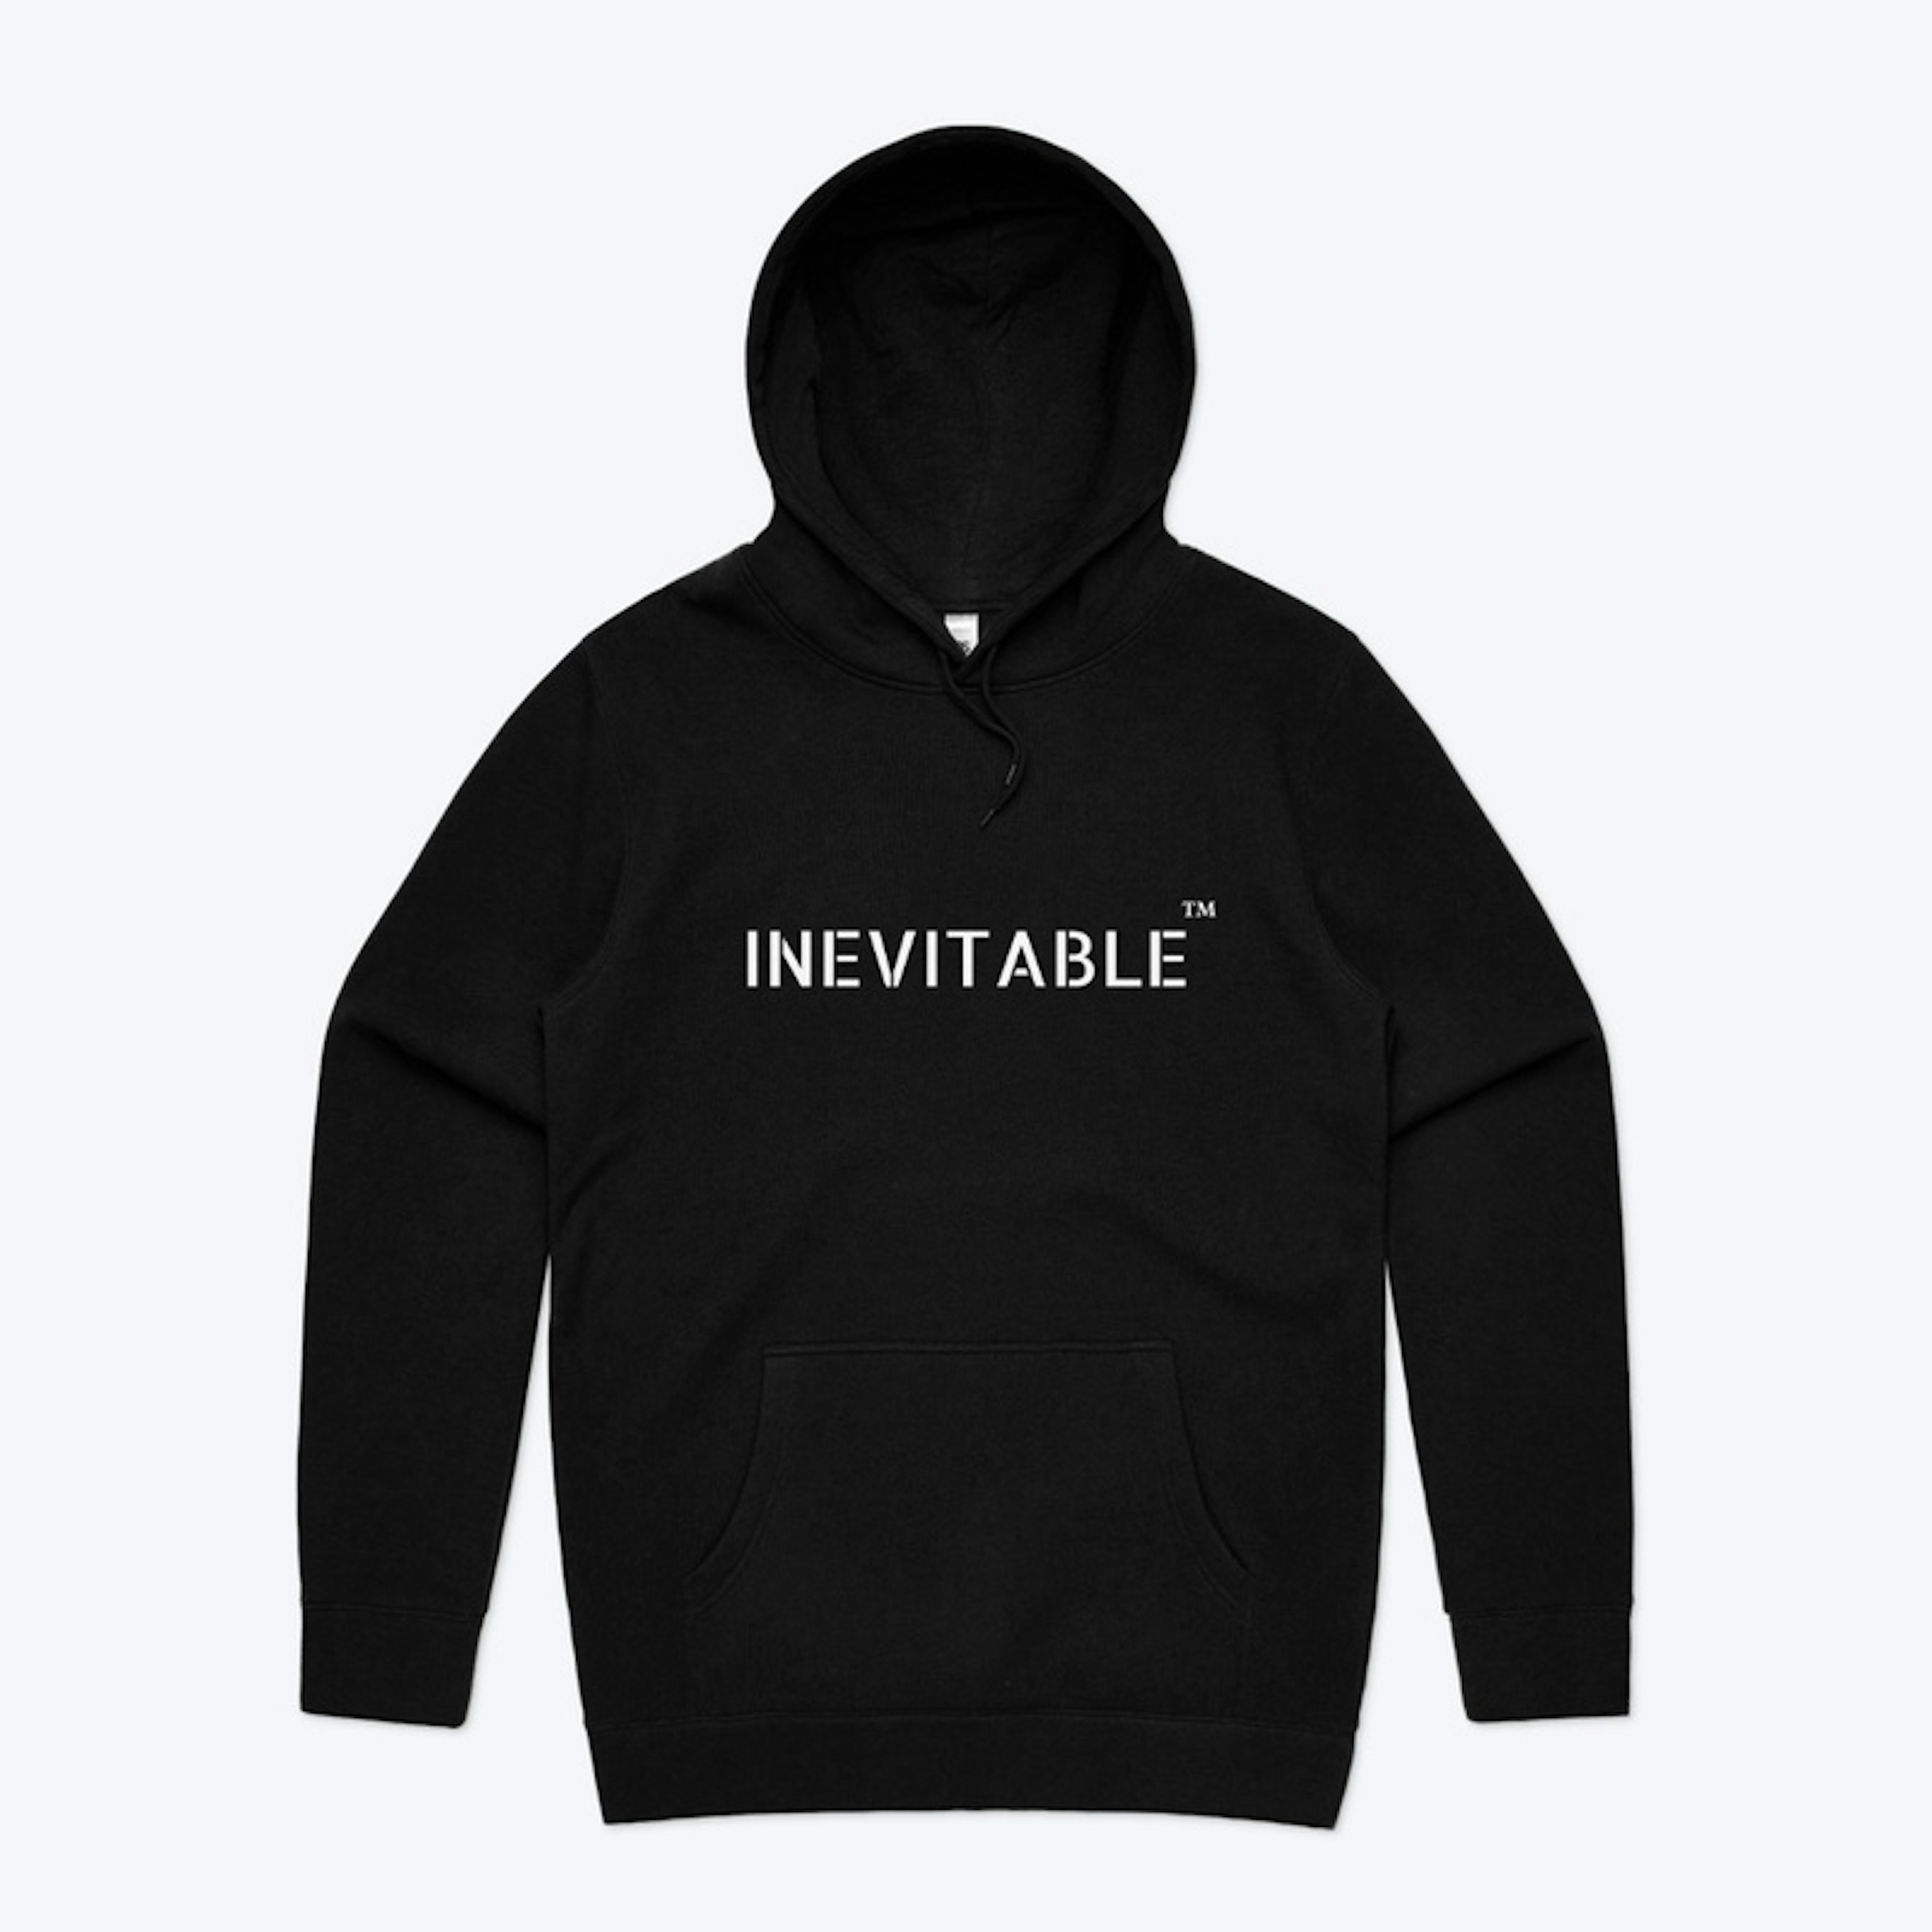 Inevitable hoodie